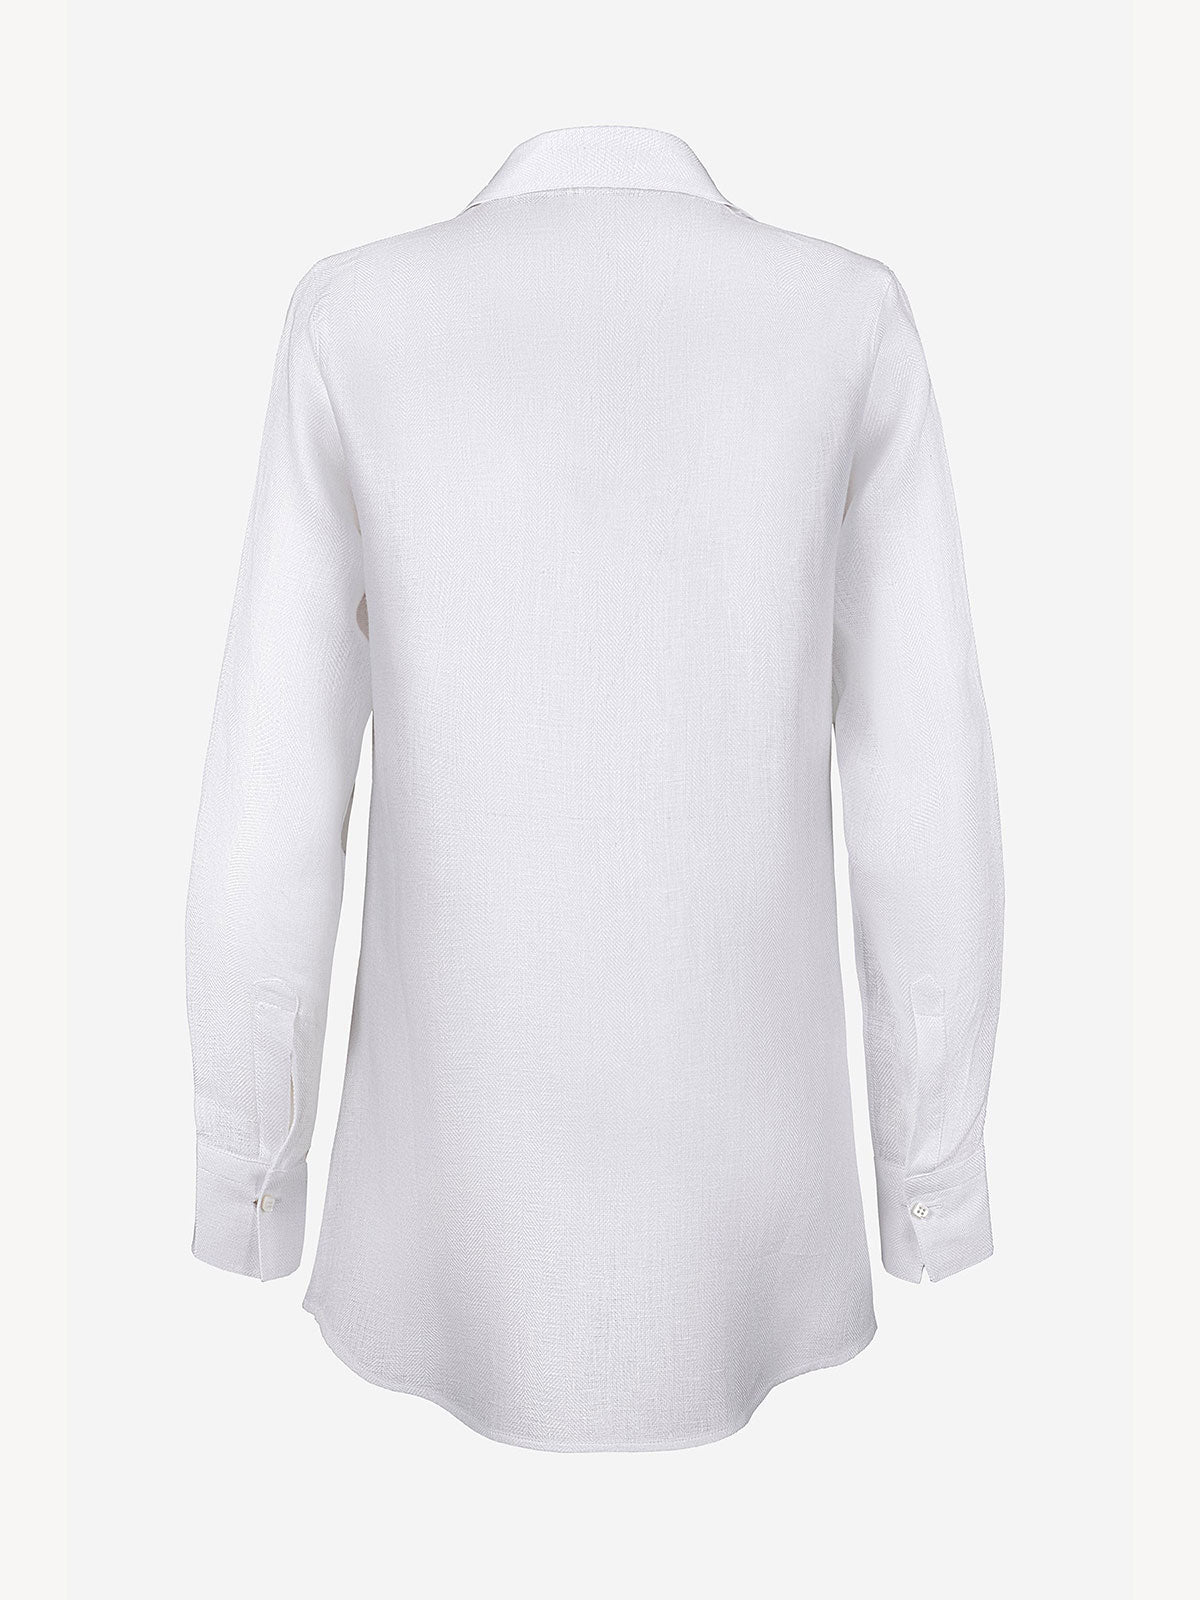 Camicia Chic Spigata 100% Capri white linen shirt back